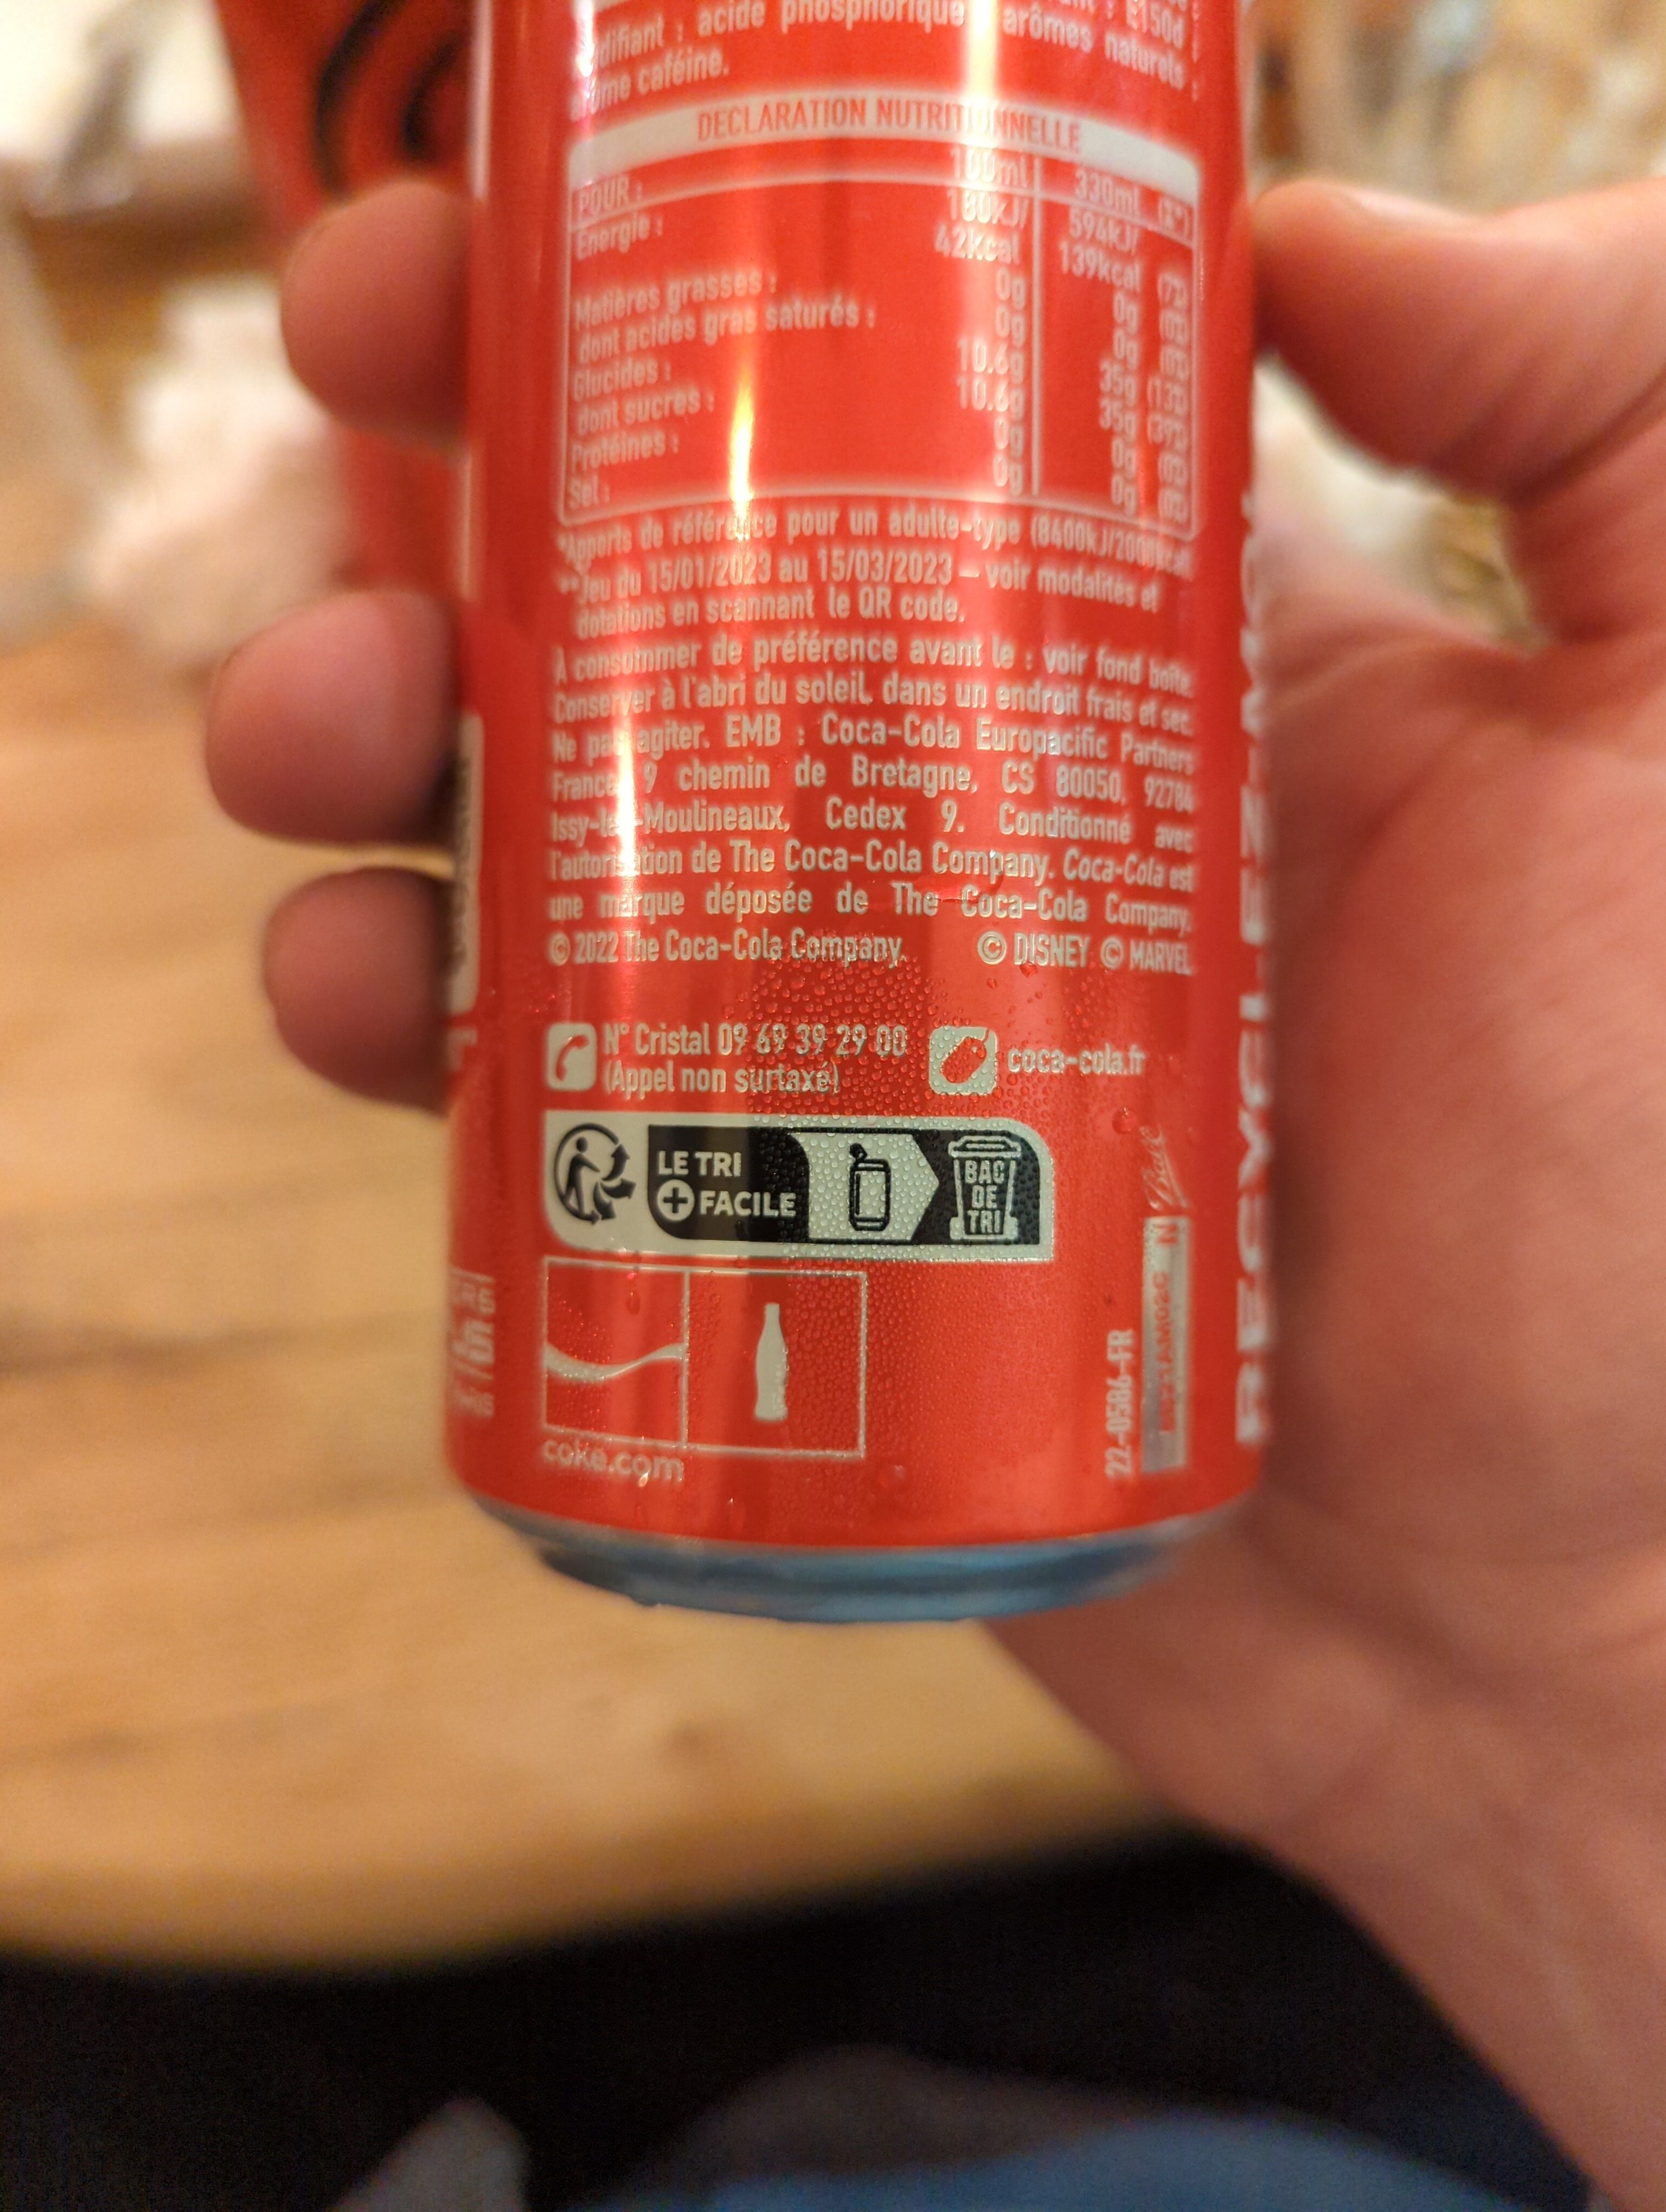 Coca-Cola goût original - リサイクル手順および/またはパッケージ情報 - fr